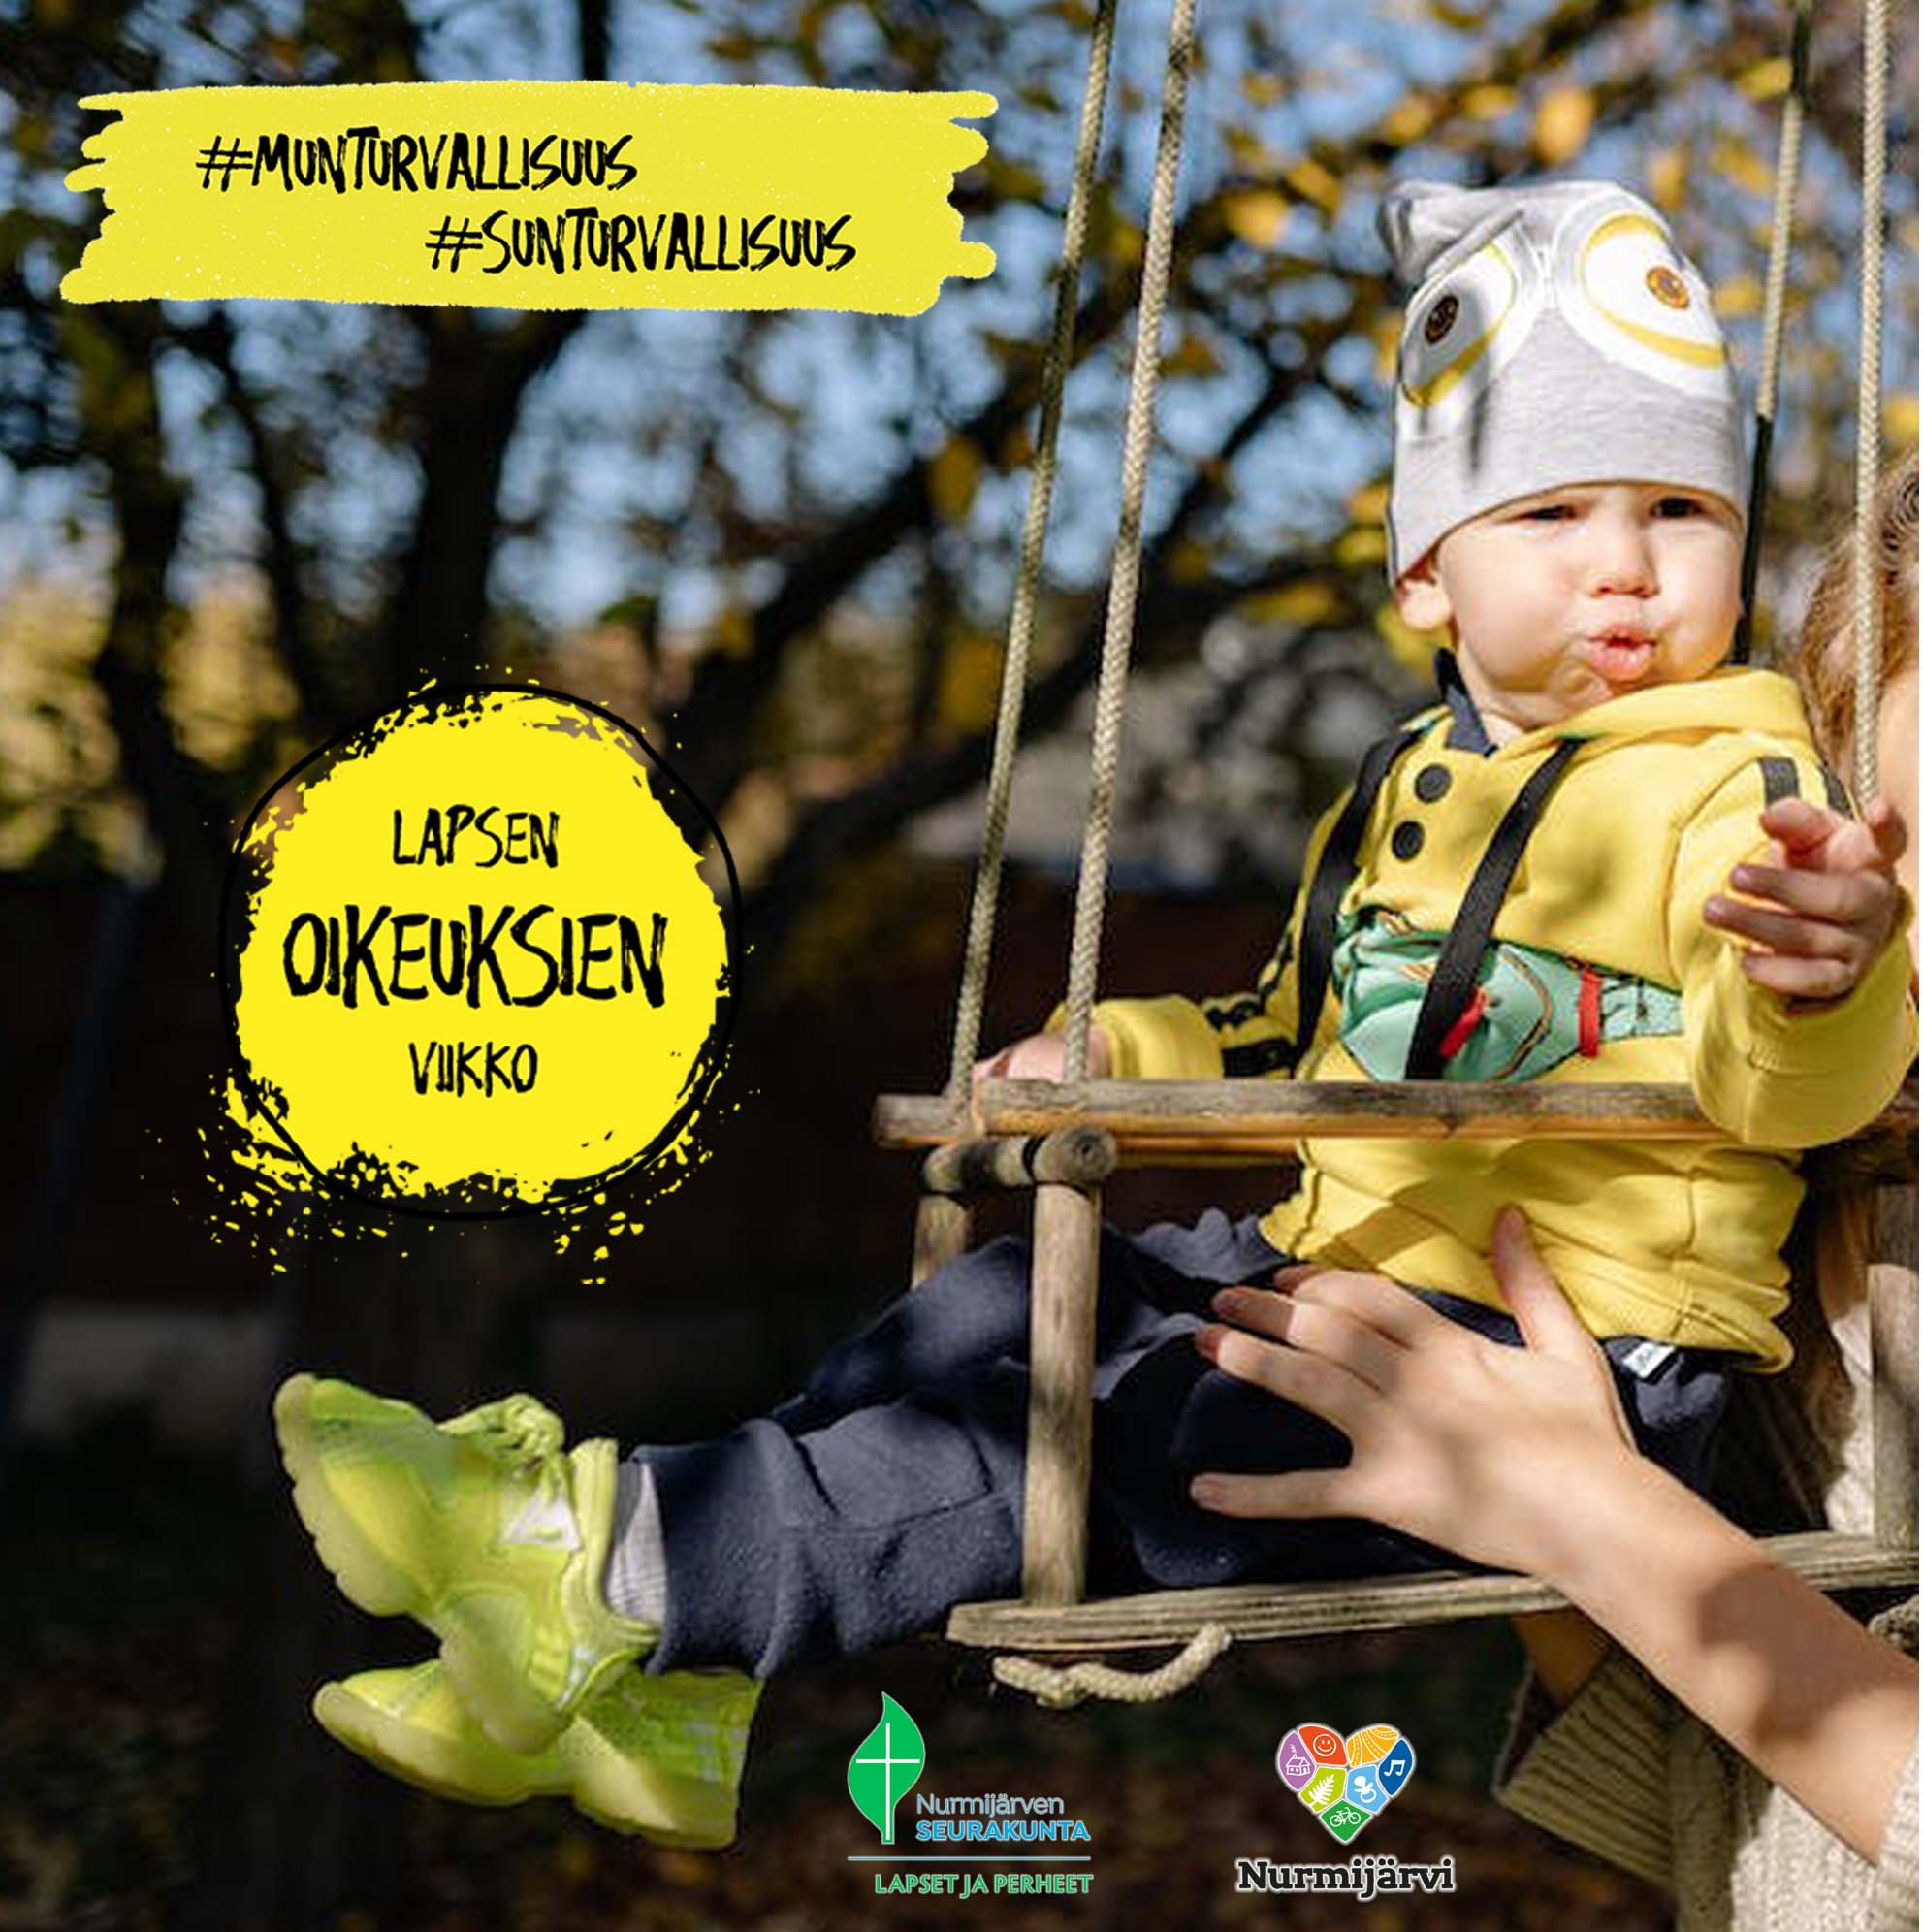 Pieni lapsi istuu keinussa. Kuvassa myös Nurmijärven seurakunnan ja kunnan sekä Lapsen oikeuksien viikon logot.